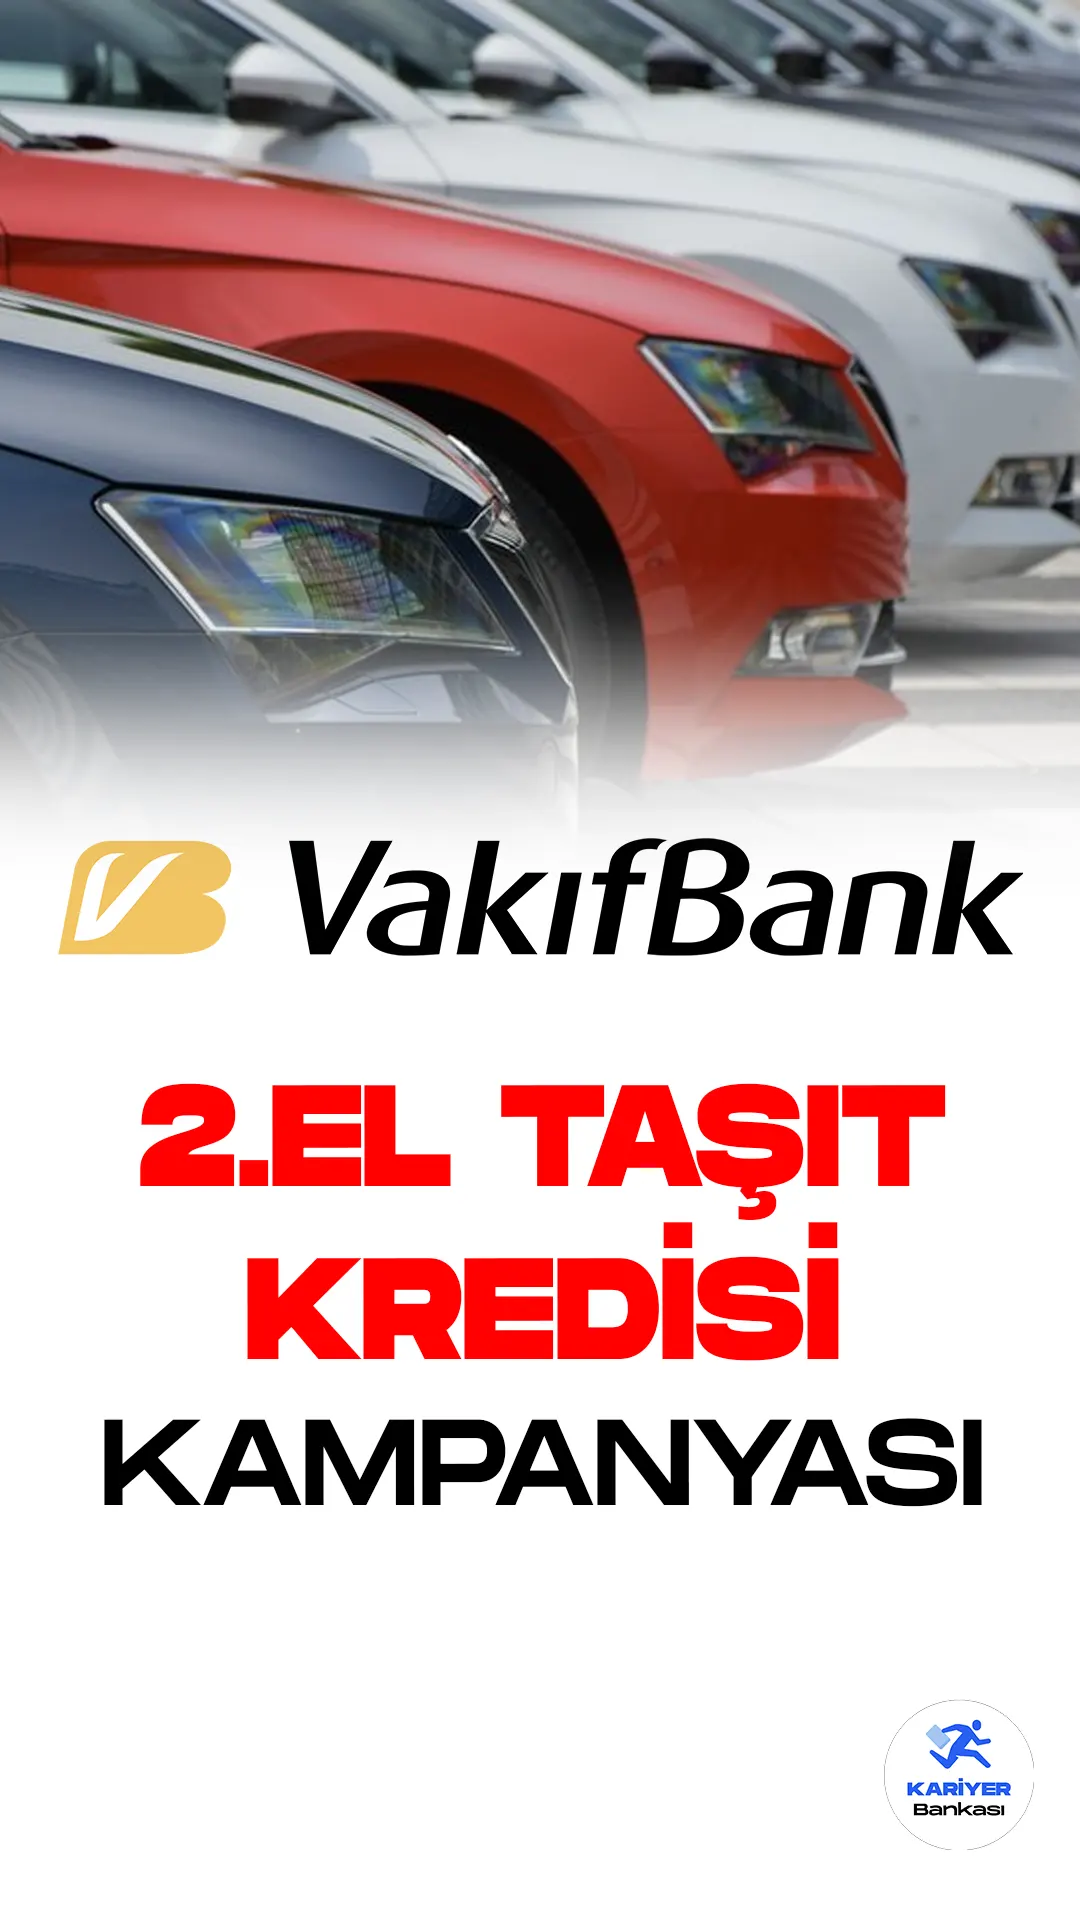 VakıfBank, 2. El Taşıt Kredisi ile Güvenli Araç Alım Satımı Yapmanızı Sağlıyor!VakıfBank, taşıt kredilerinde bir ilke imza atarak 2. El araç alım satımını güvenli ve kolay hale getiriyor.